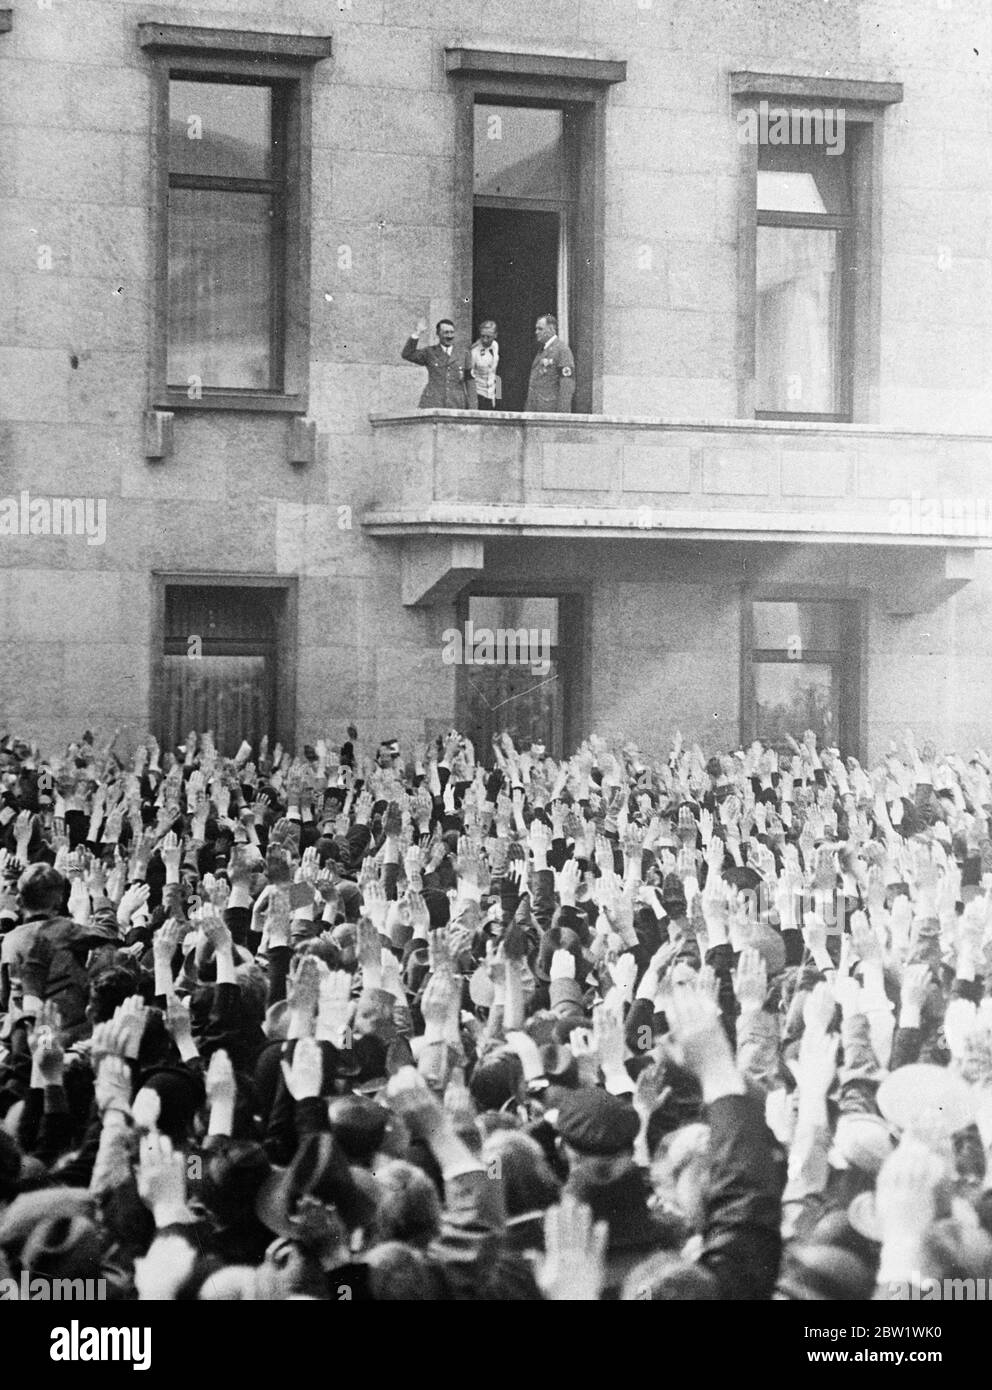 Hitler kehrt zusammen mit einem Geburtstagsgruß zurück. Bundeskanzler Hitler blickte auf Tausende von hochgelobten Armen herab, als er vom Balkon der Kanzlerei in Berlin den Gruß einer riesigen Menge von Bewunderern an seinem 48. Geburtstag angab. Foto zeigt, dass Bundeskanzler Hitler den Gruß seiner Gratulanten von einem Balkon des Kanzleramtes zurückbringt. 21. April 1937 Stockfoto